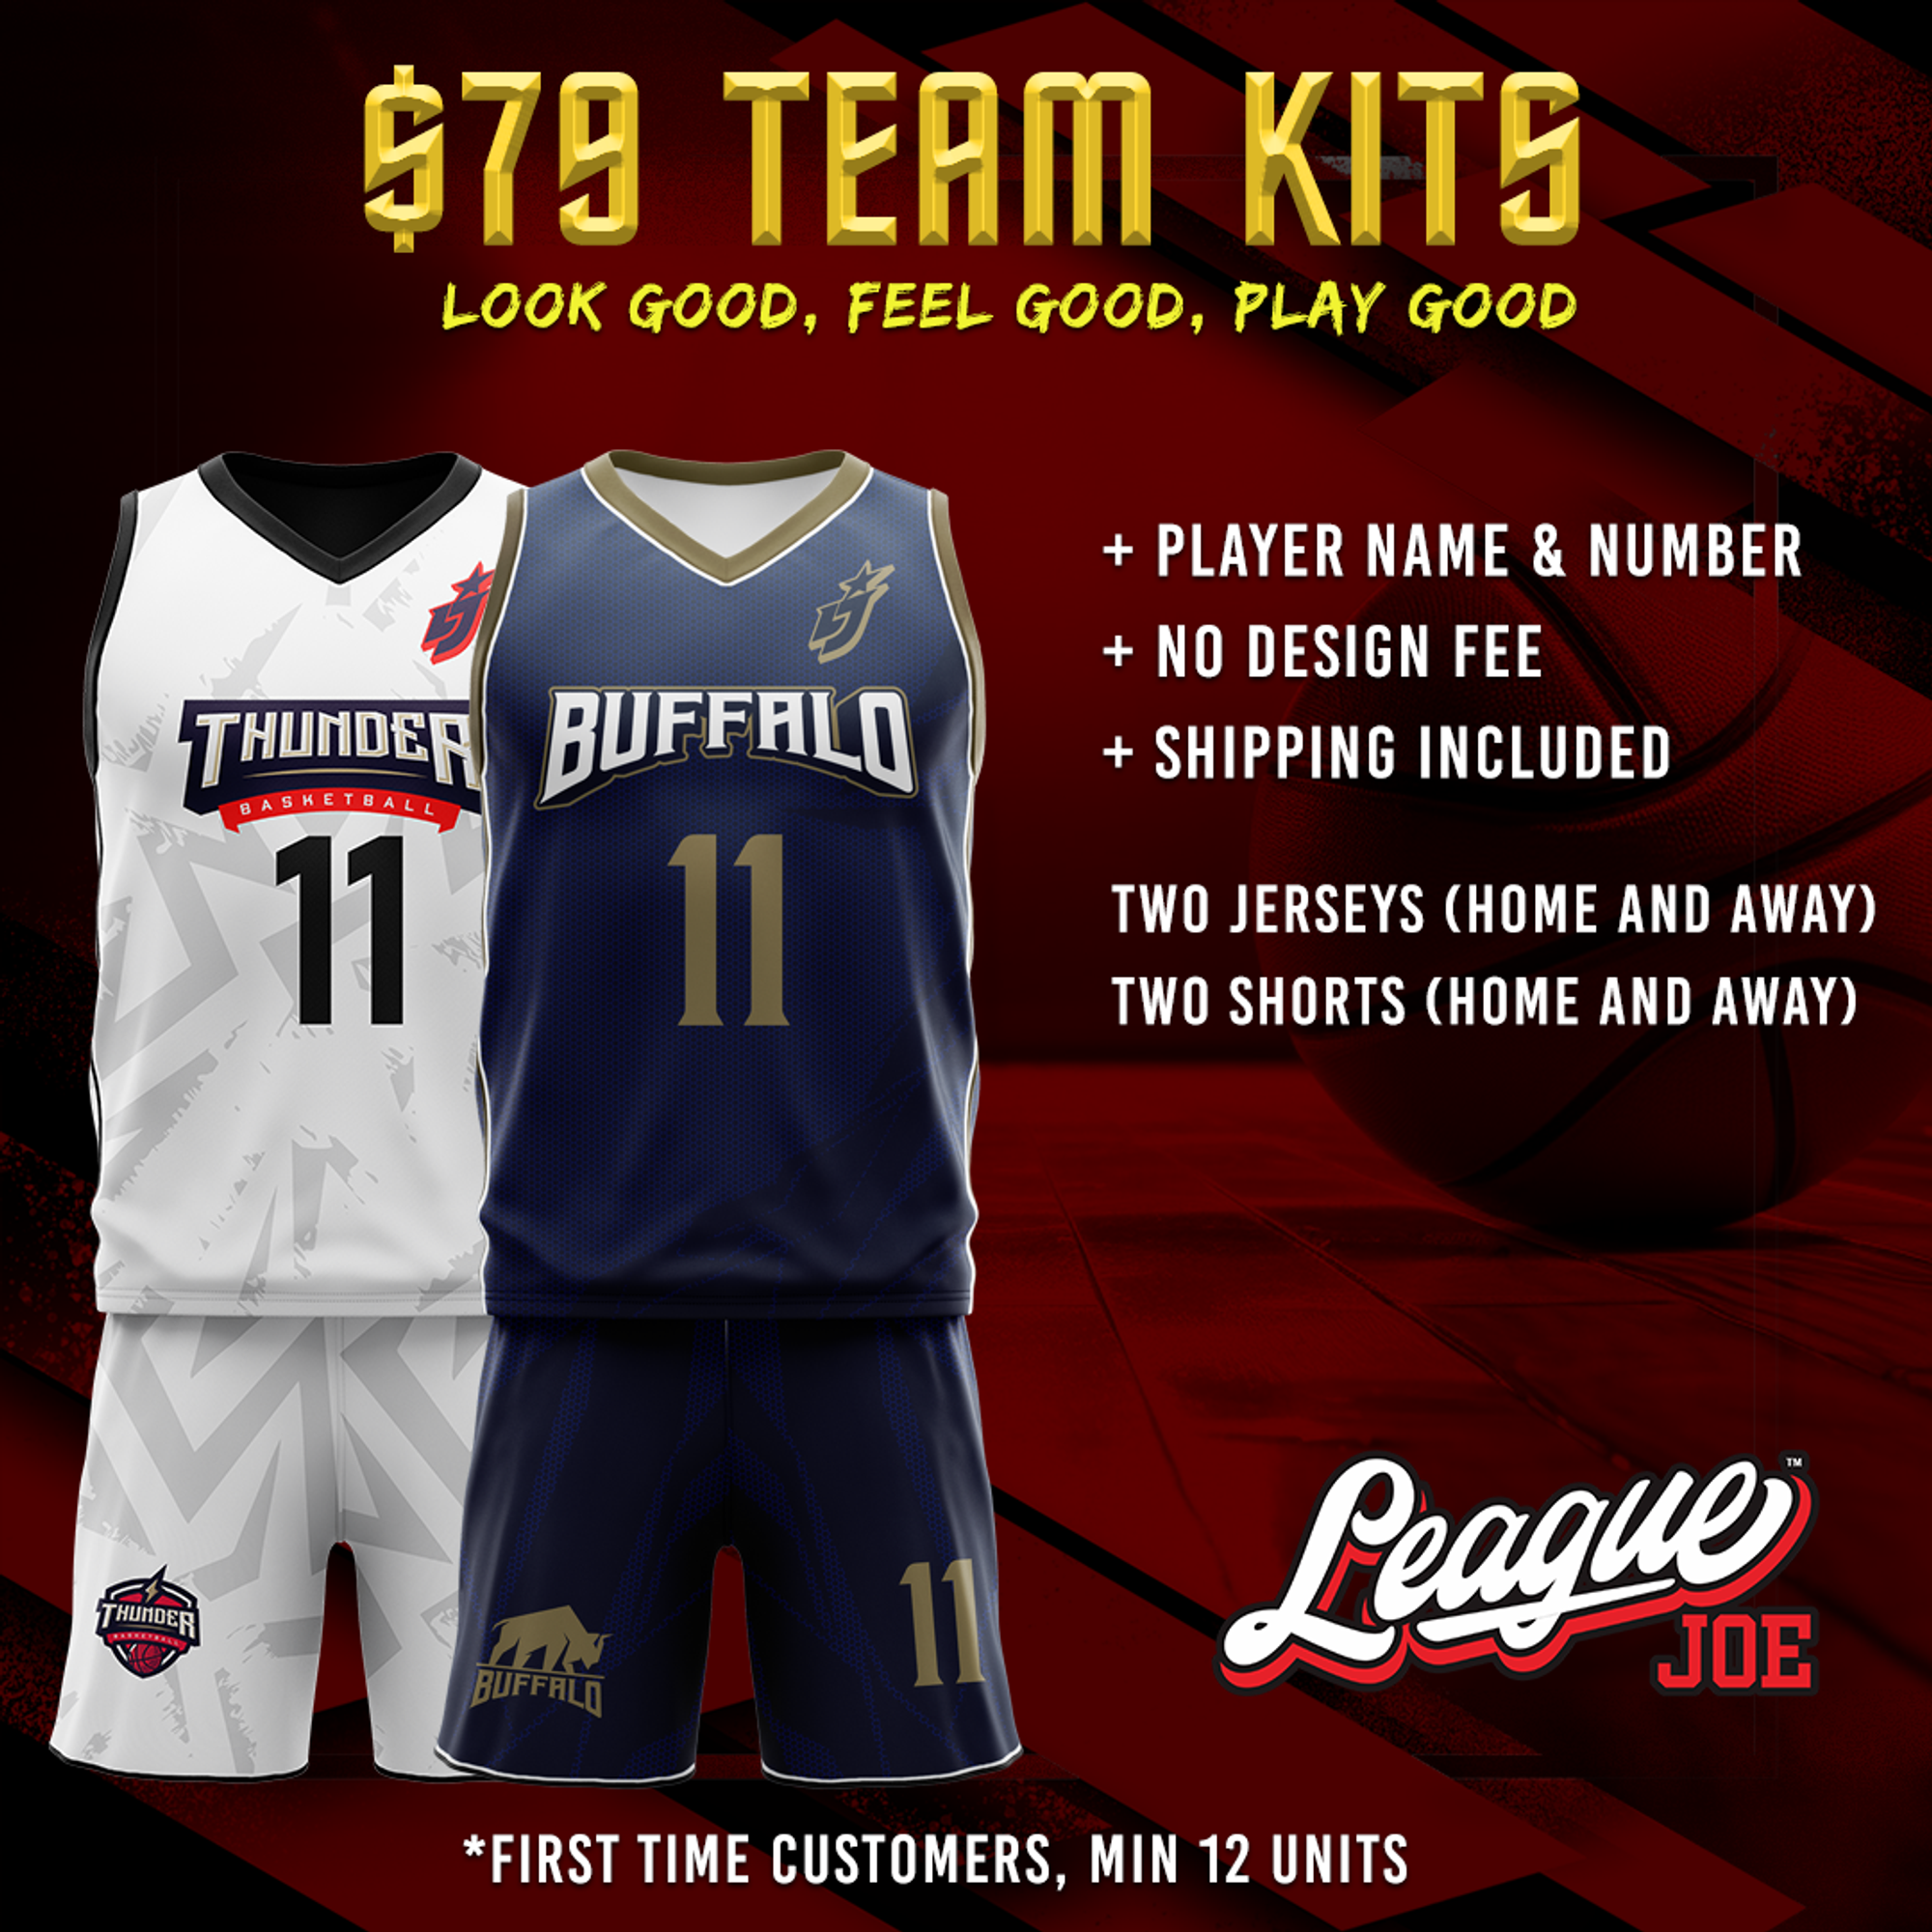 $79 Player Uniform Kits for Basketball